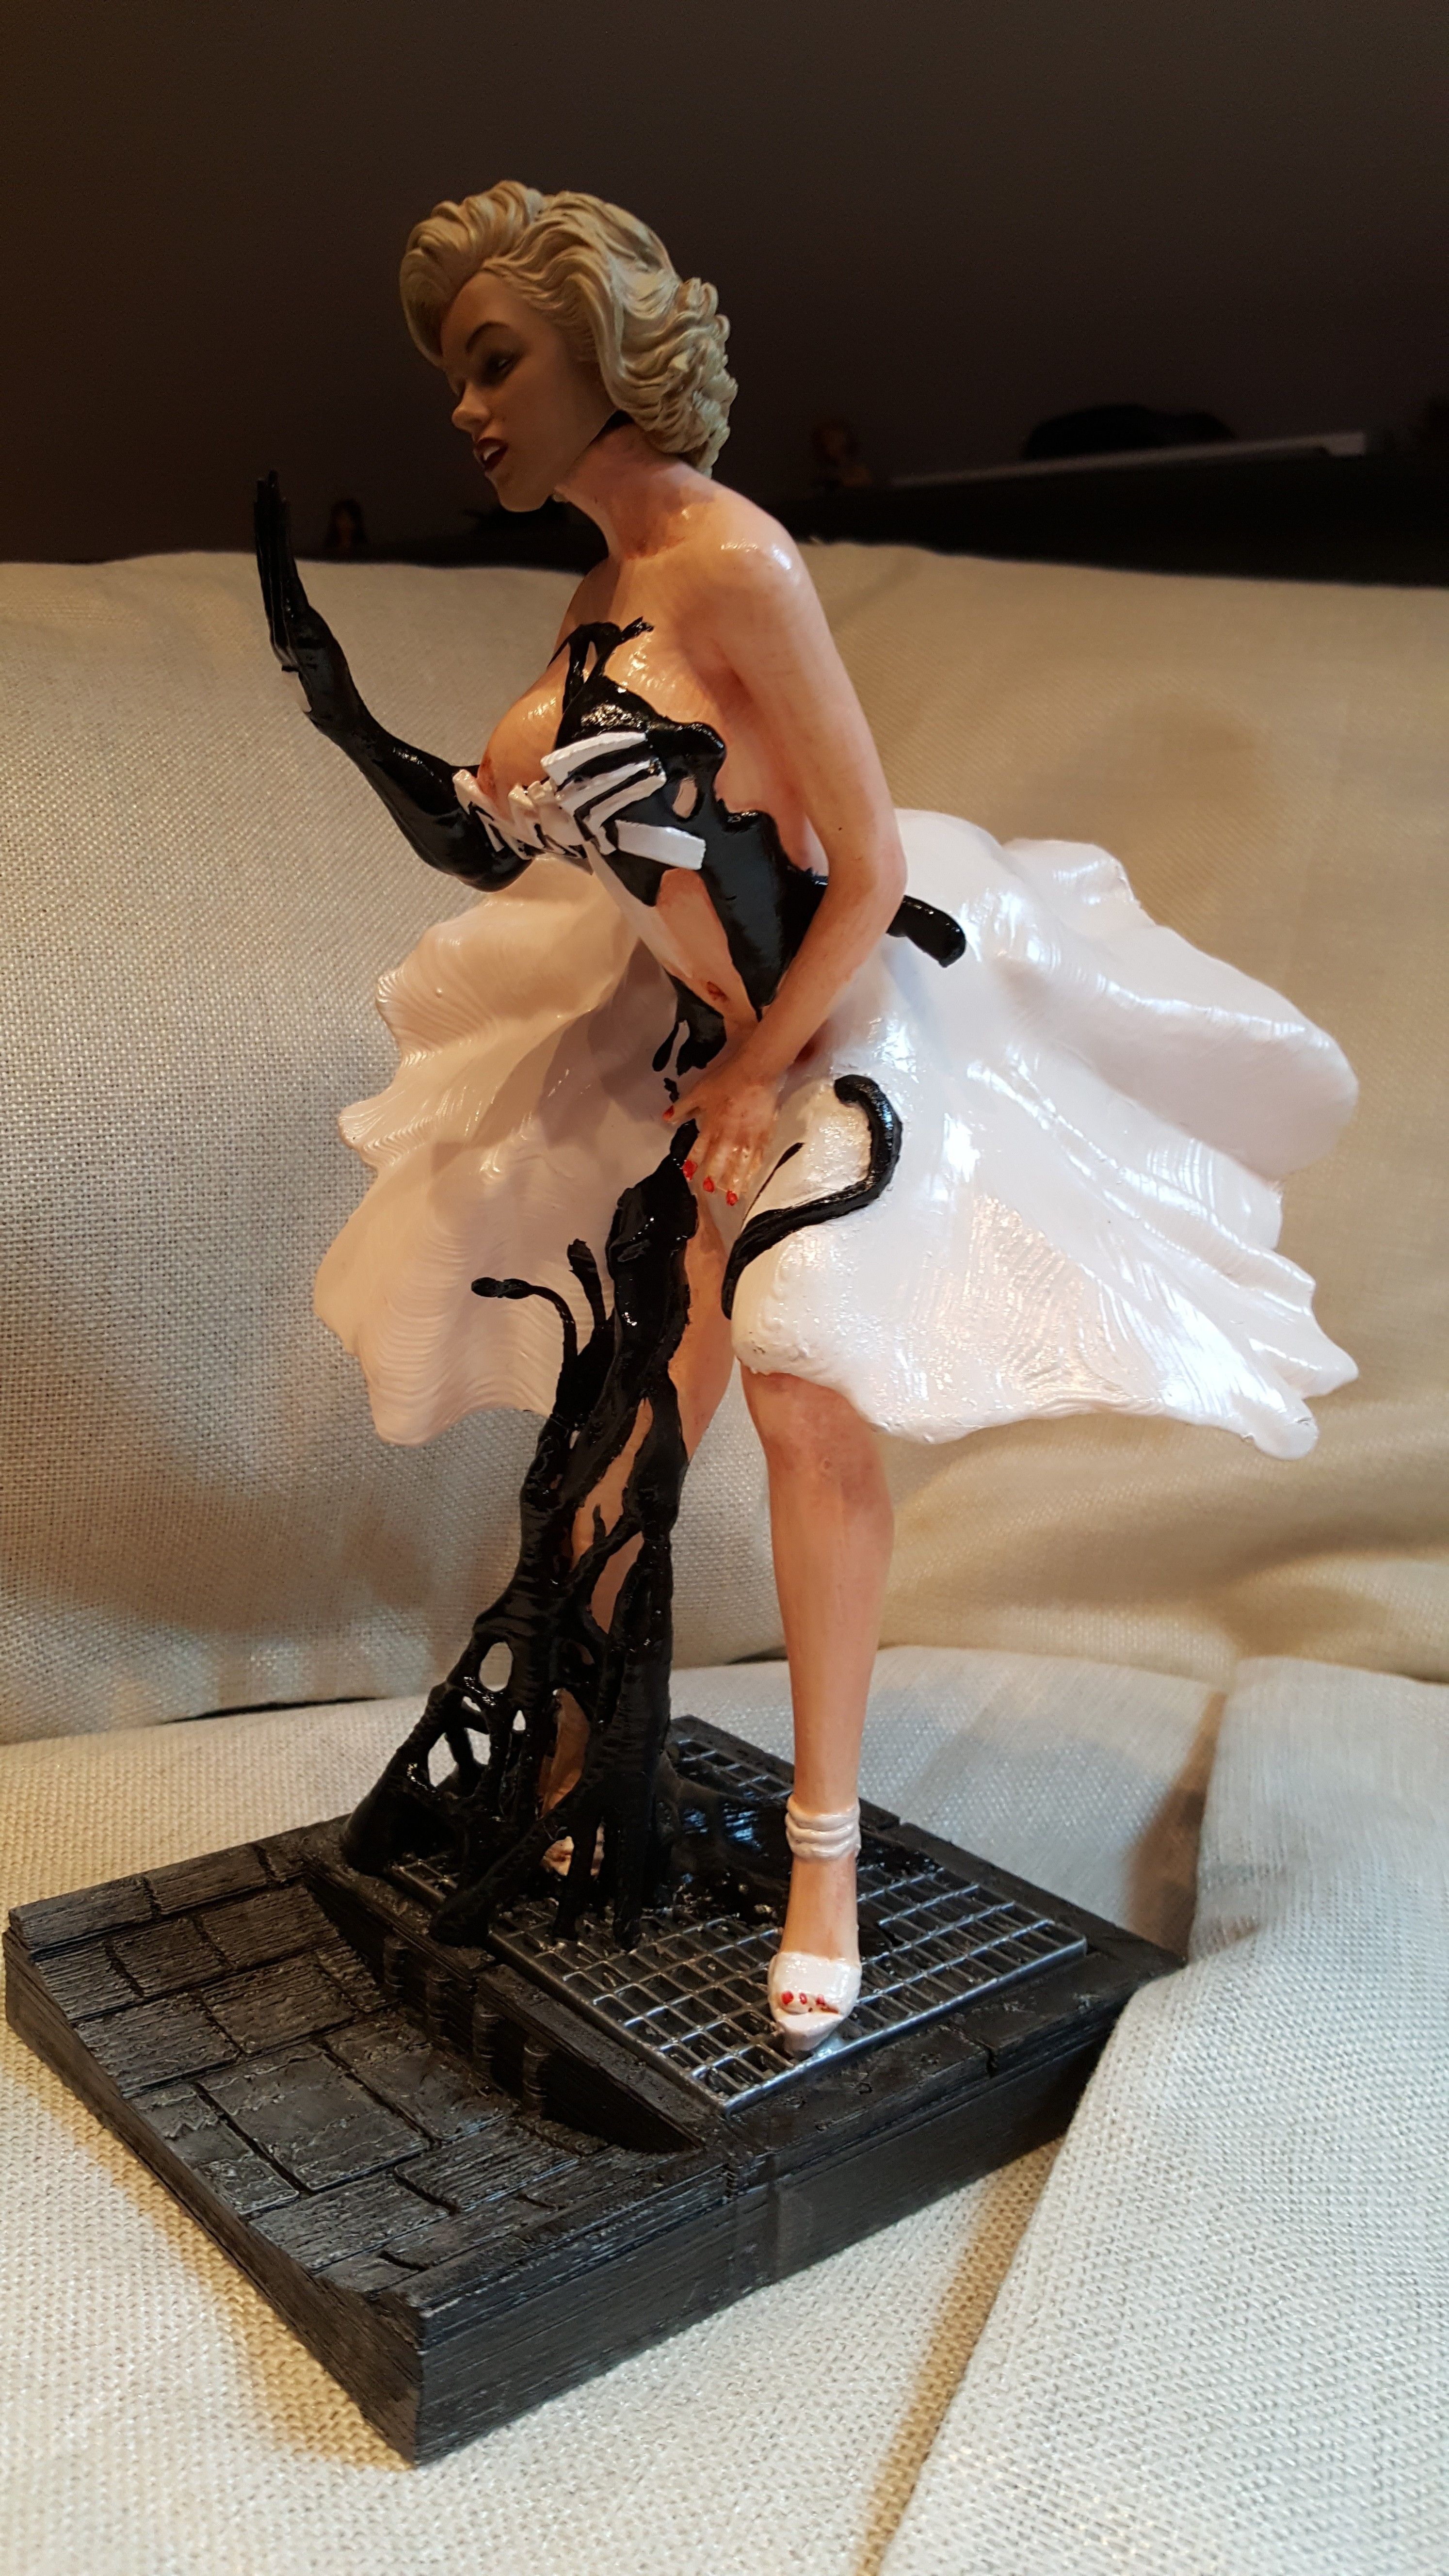 20180318_143943.jpg Télécharger fichier STL gratuit Mary Jane Monroe aka Female Venom - Bimbo Series Model 2 - par SPARX • Plan pour imprimante 3D, SparxBM